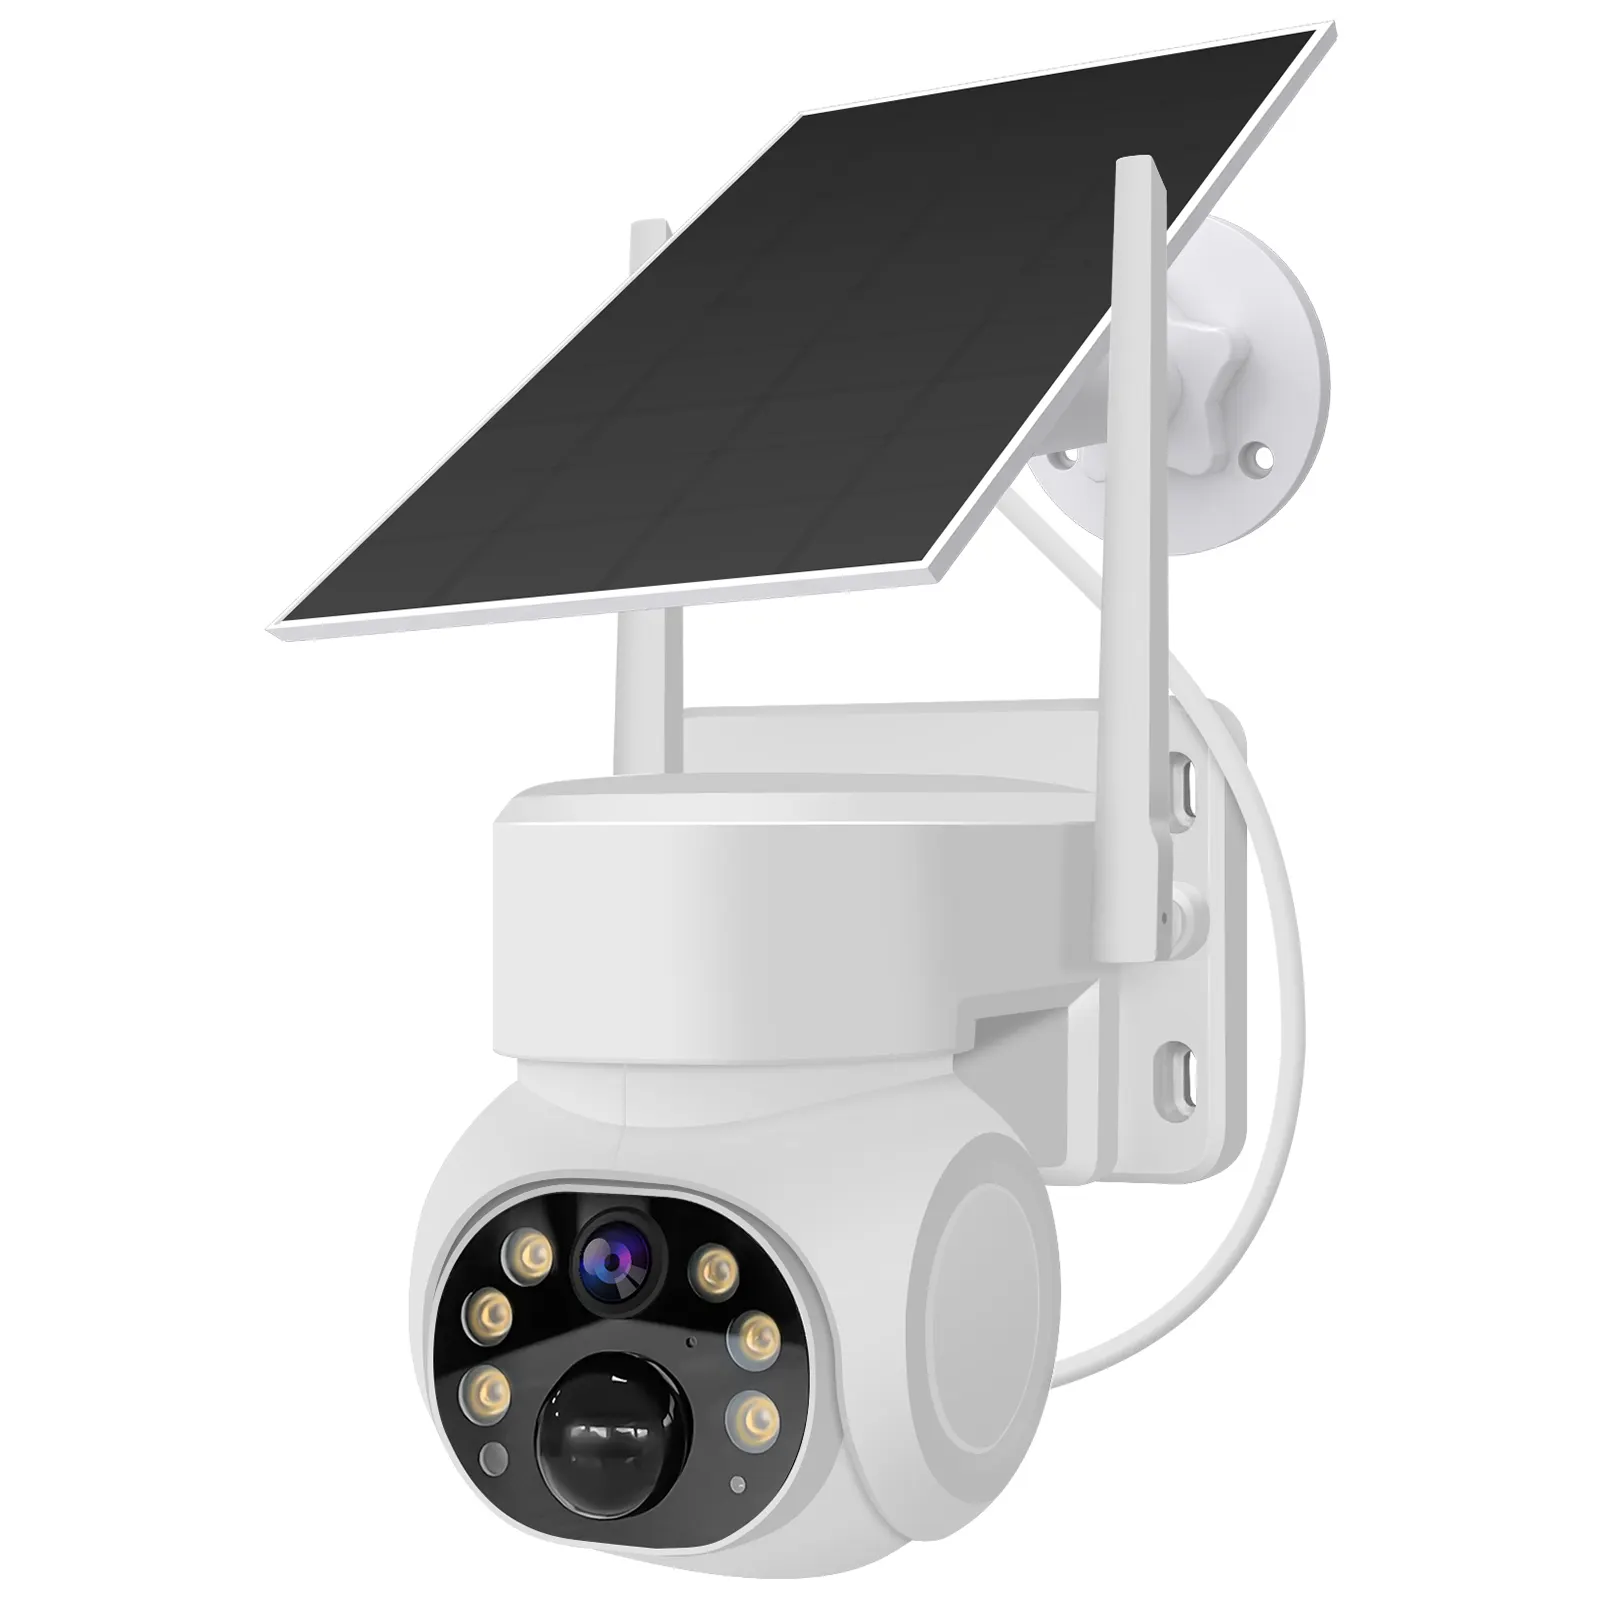 Tuya Hd Solar Camera Outdoor Wifi Camera Solar Camera With Sim Card